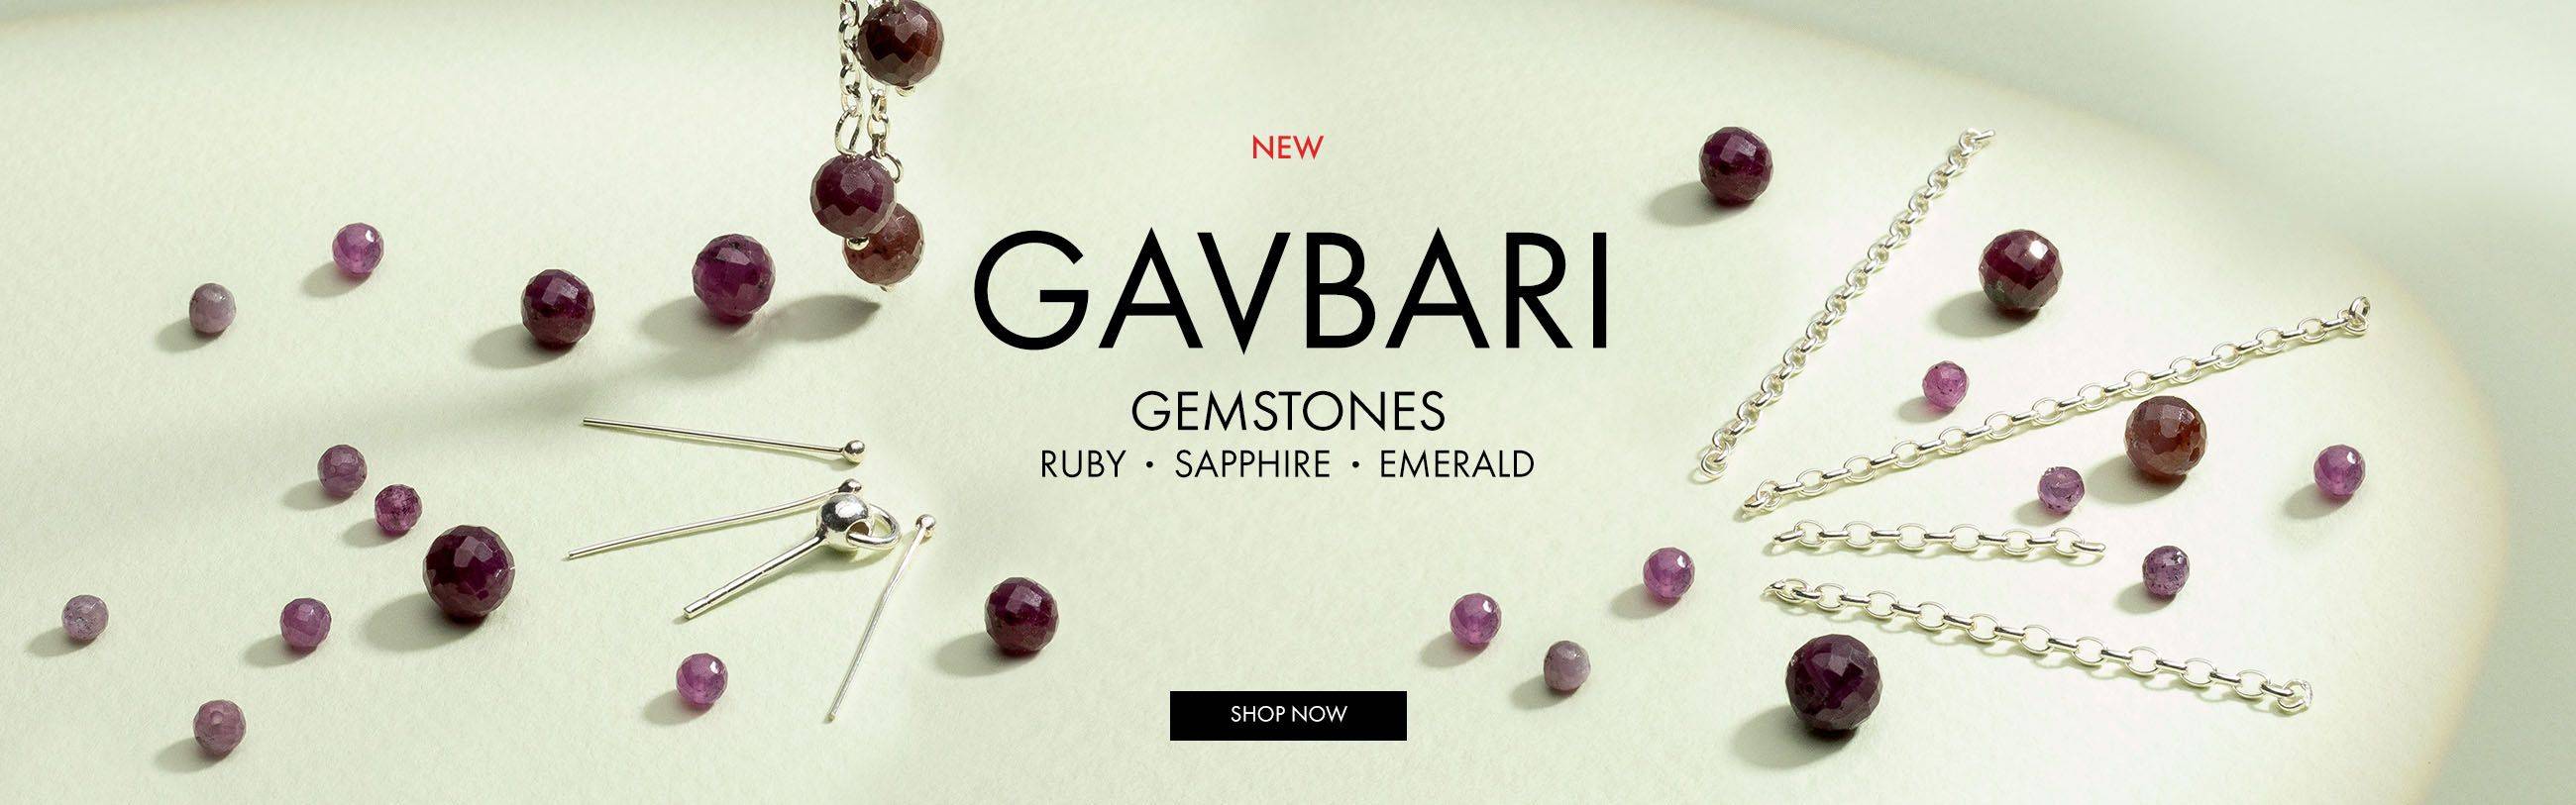 Gavbari Gems